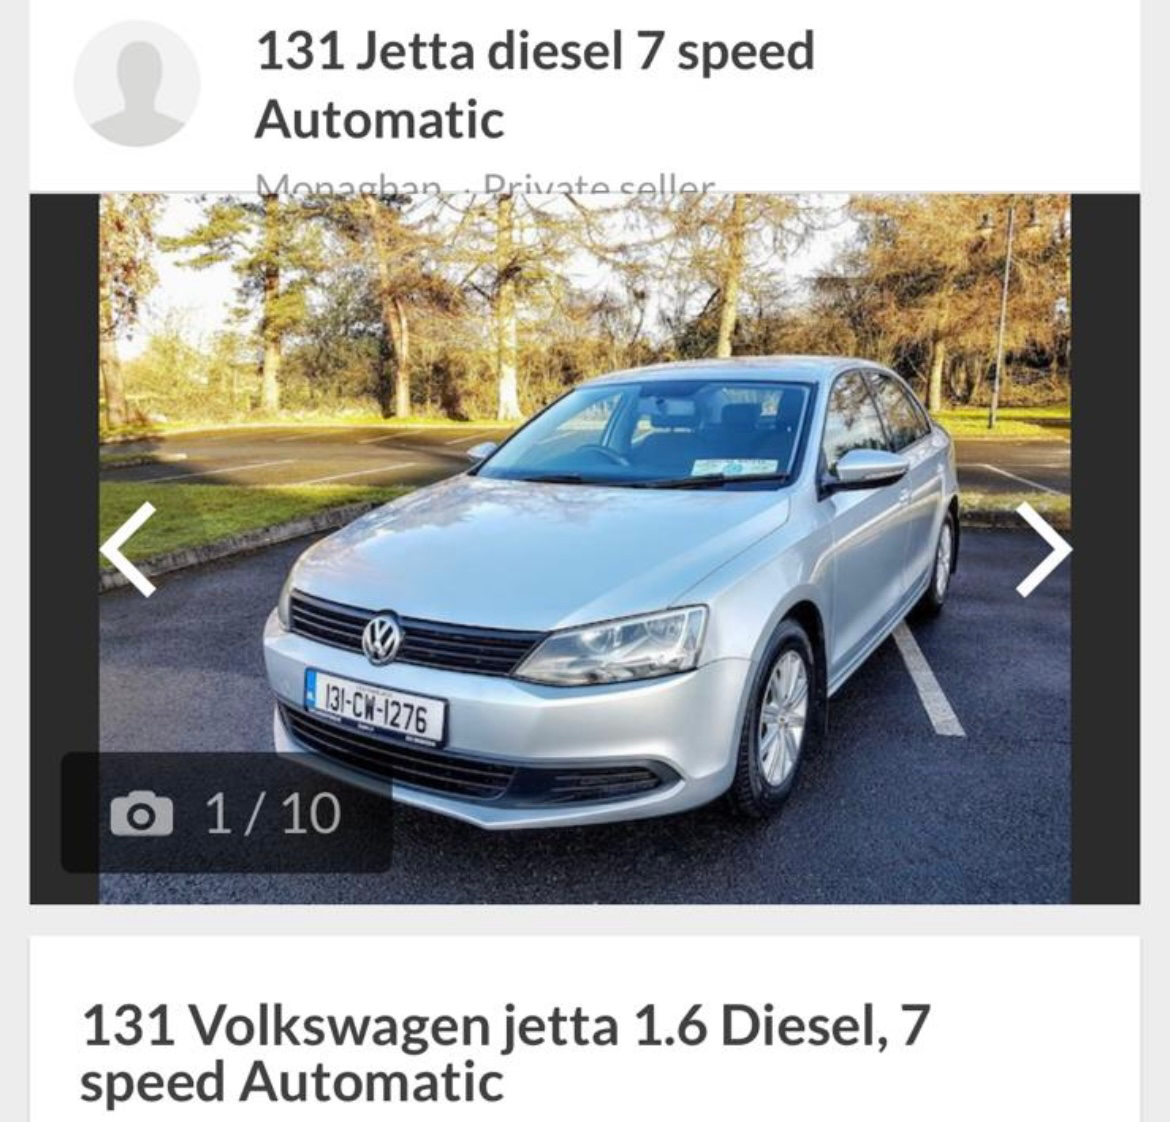 Used Volkswagen Jetta 2013 in Kildare